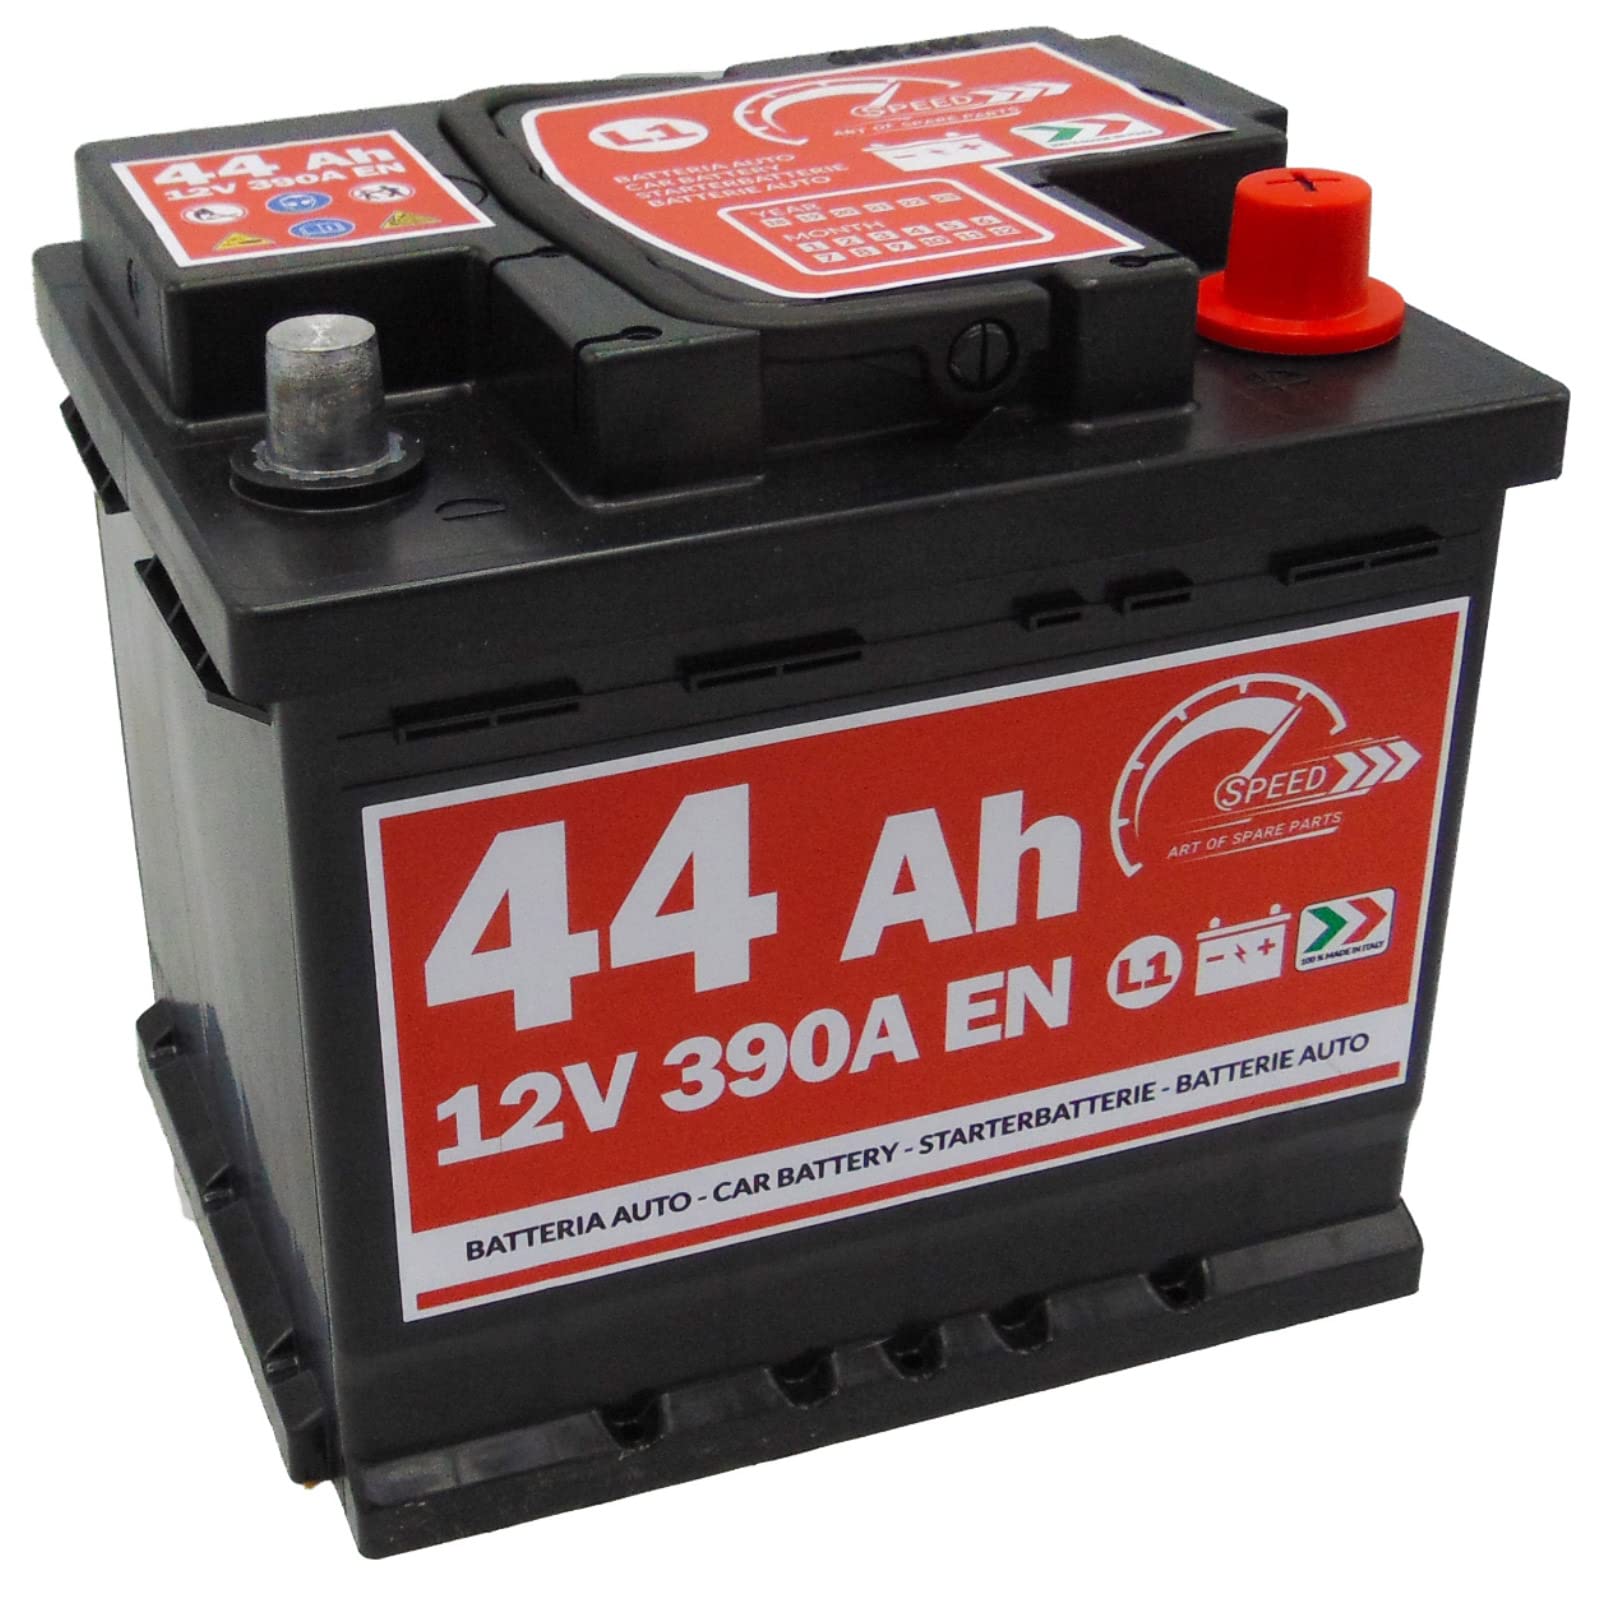 Autobatterie Speed von SMC Code L144 44 Ah 390 A Pluspol rechts 12 V von SPEED